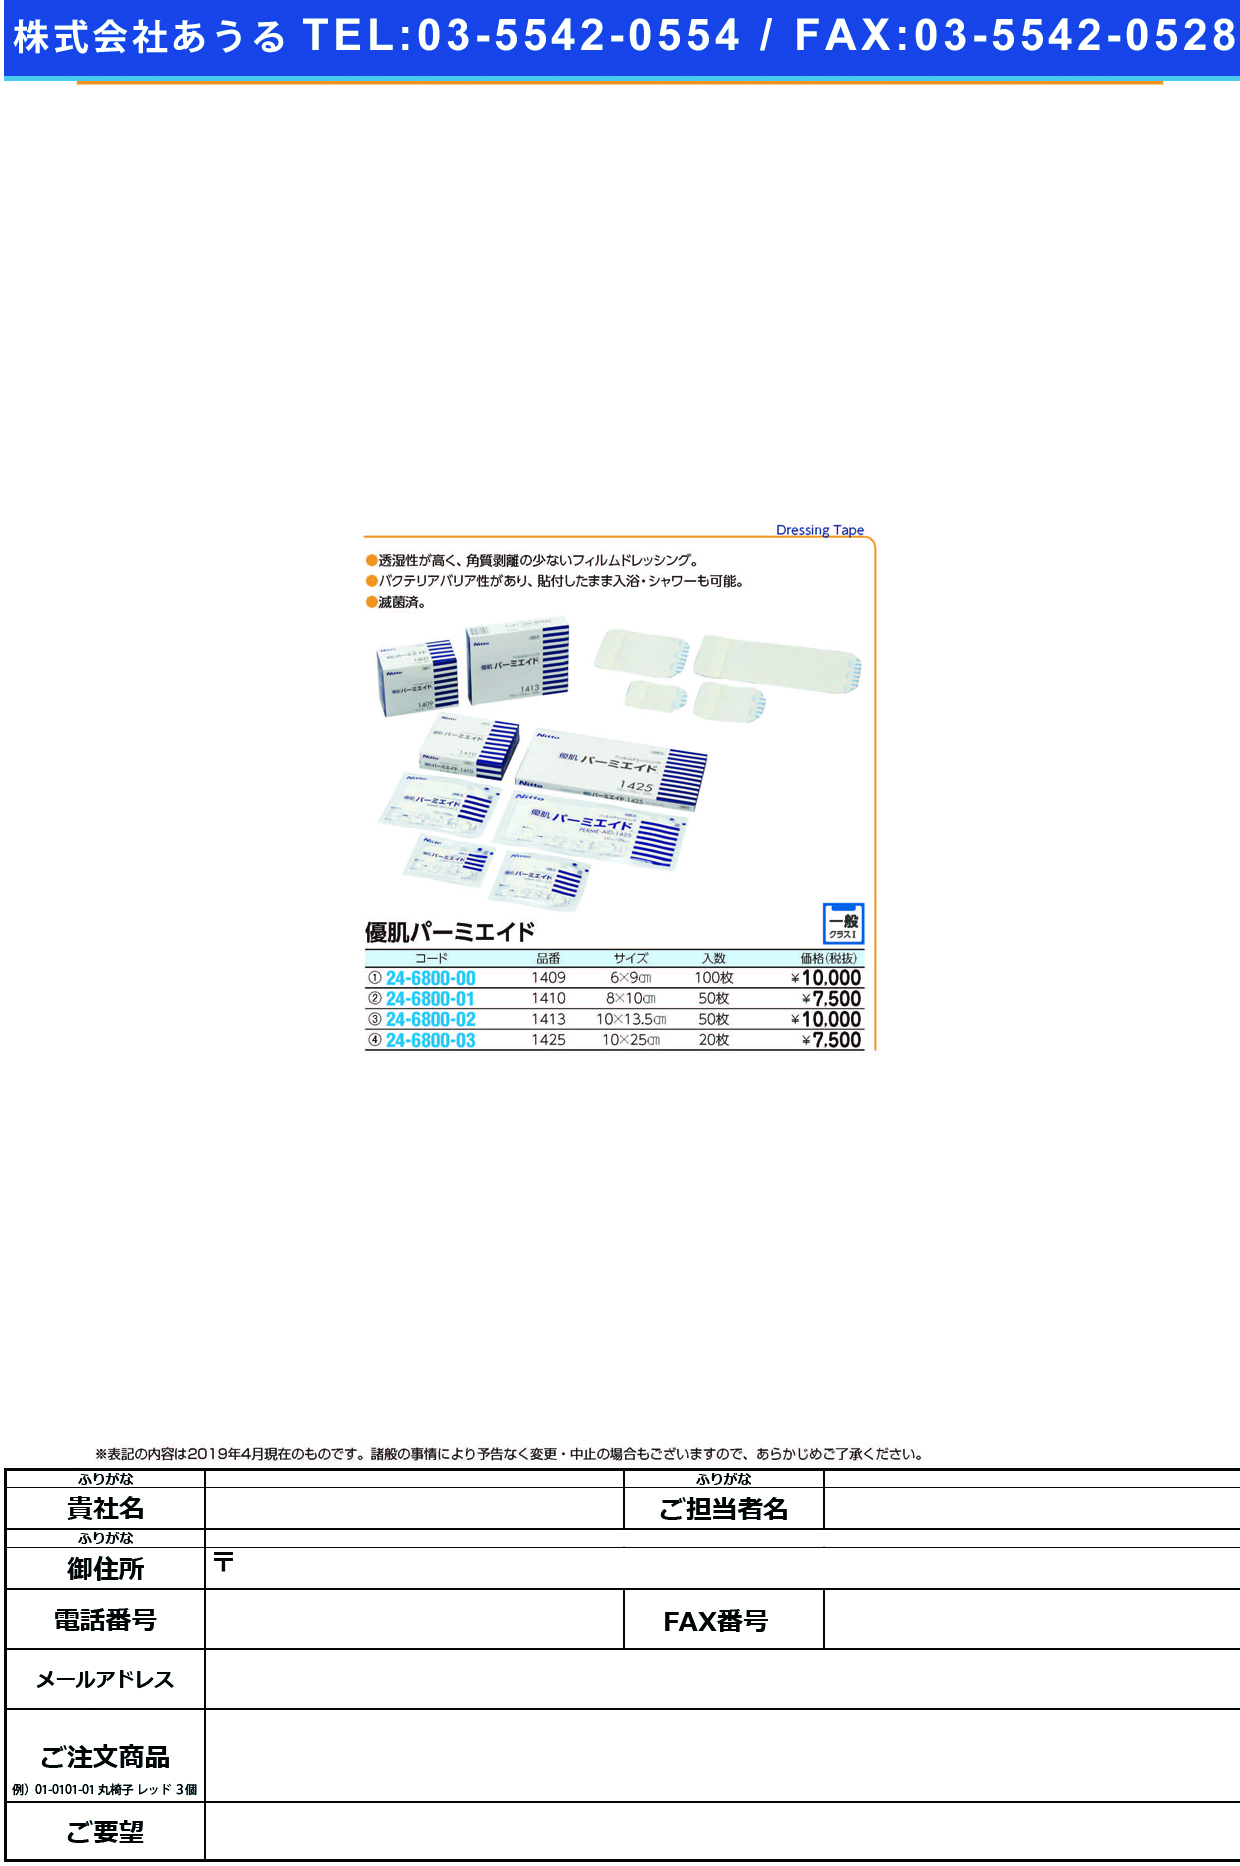 (24-6800-01)ニトリート優肌パーミエイド 1410(8CMX10CM)50ｲﾘ ﾆﾄﾘｰﾄﾕｳｷﾊﾟｰﾐｴｲﾄﾞ(ニトムズ)【1箱単位】【2019年カタログ商品】